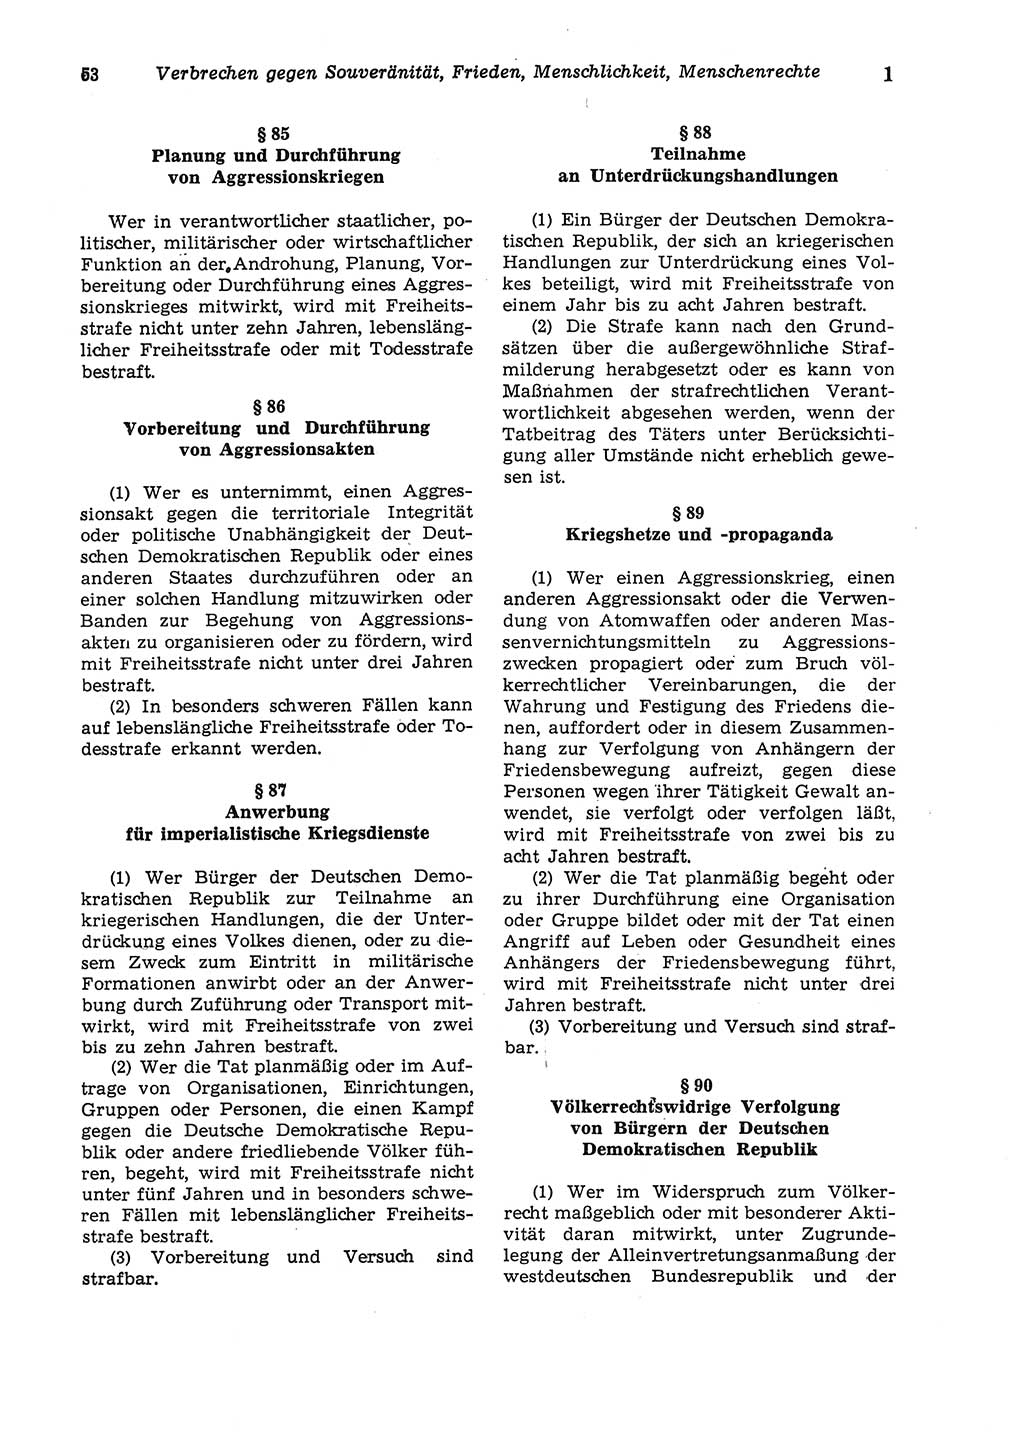 Strafgesetzbuch (StGB) der Deutschen Demokratischen Republik (DDR) und angrenzende Gesetze und Bestimmungen 1975, Seite 53 (StGB DDR Ges. Best. 1975, S. 53)